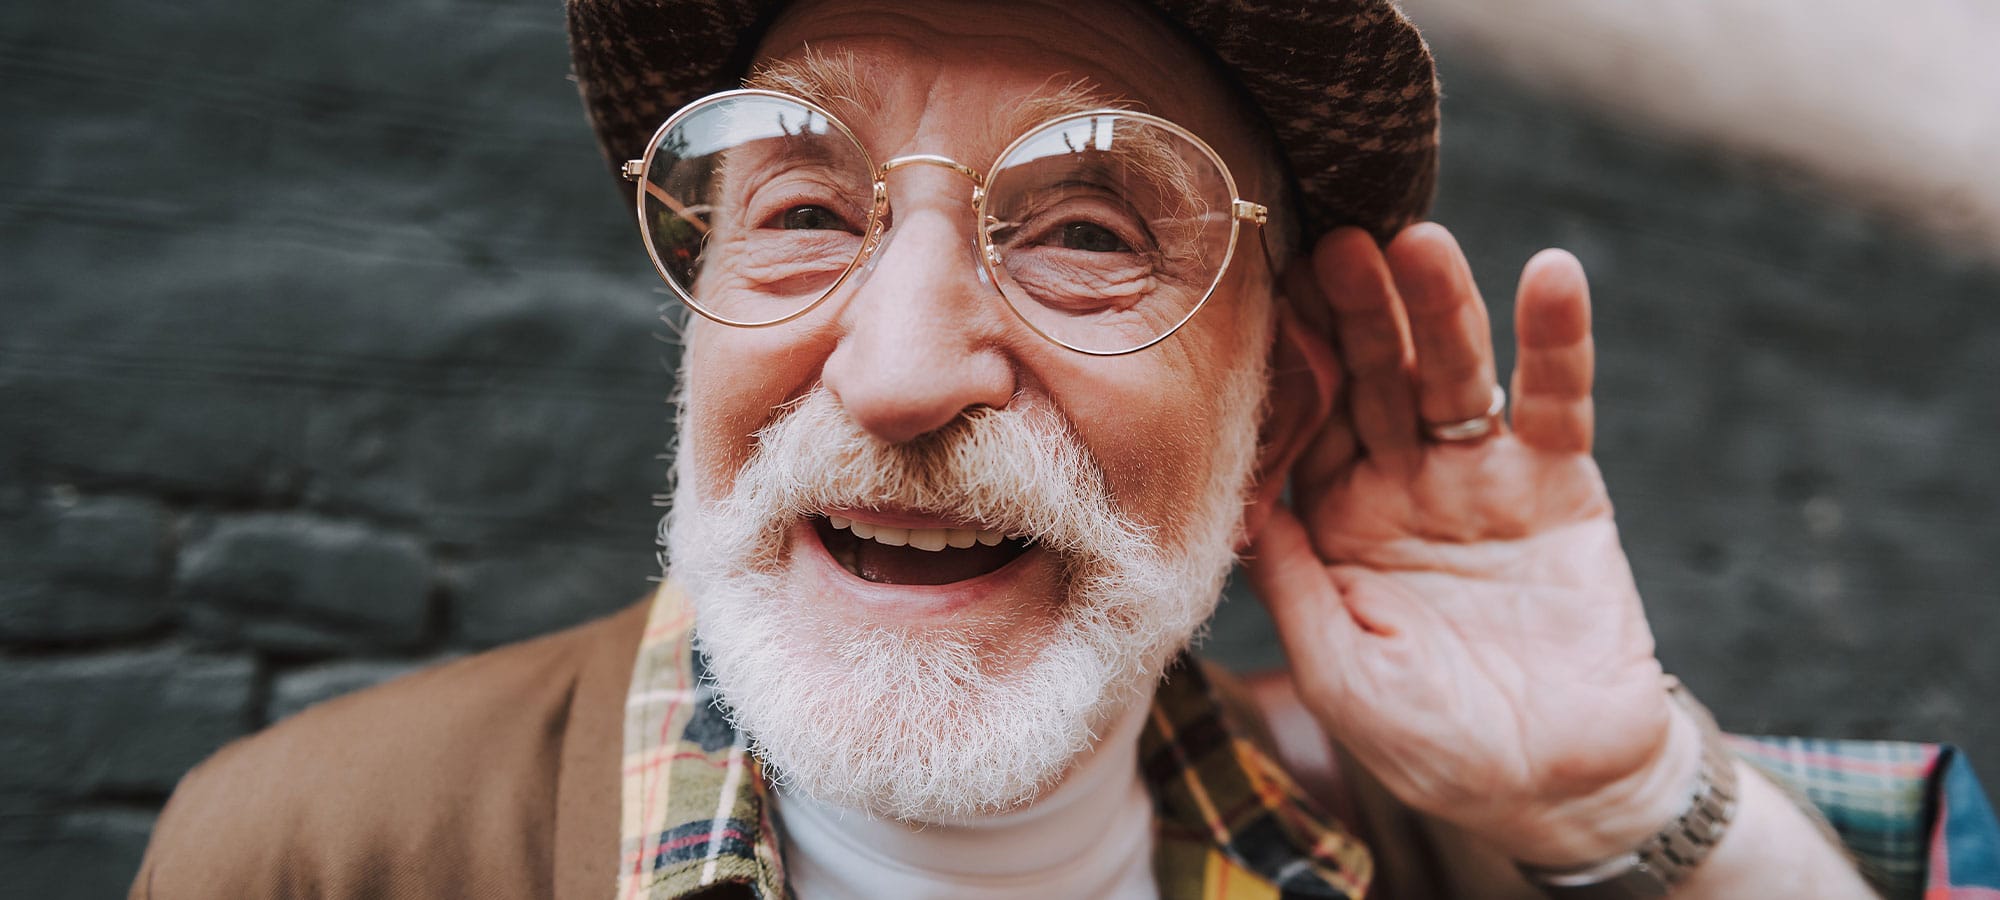 Älterer Herr, der lachend in die Kamera schaut und seine linke Hand ans Ohr hält, um zu symbolisieren, dass er zuhört.